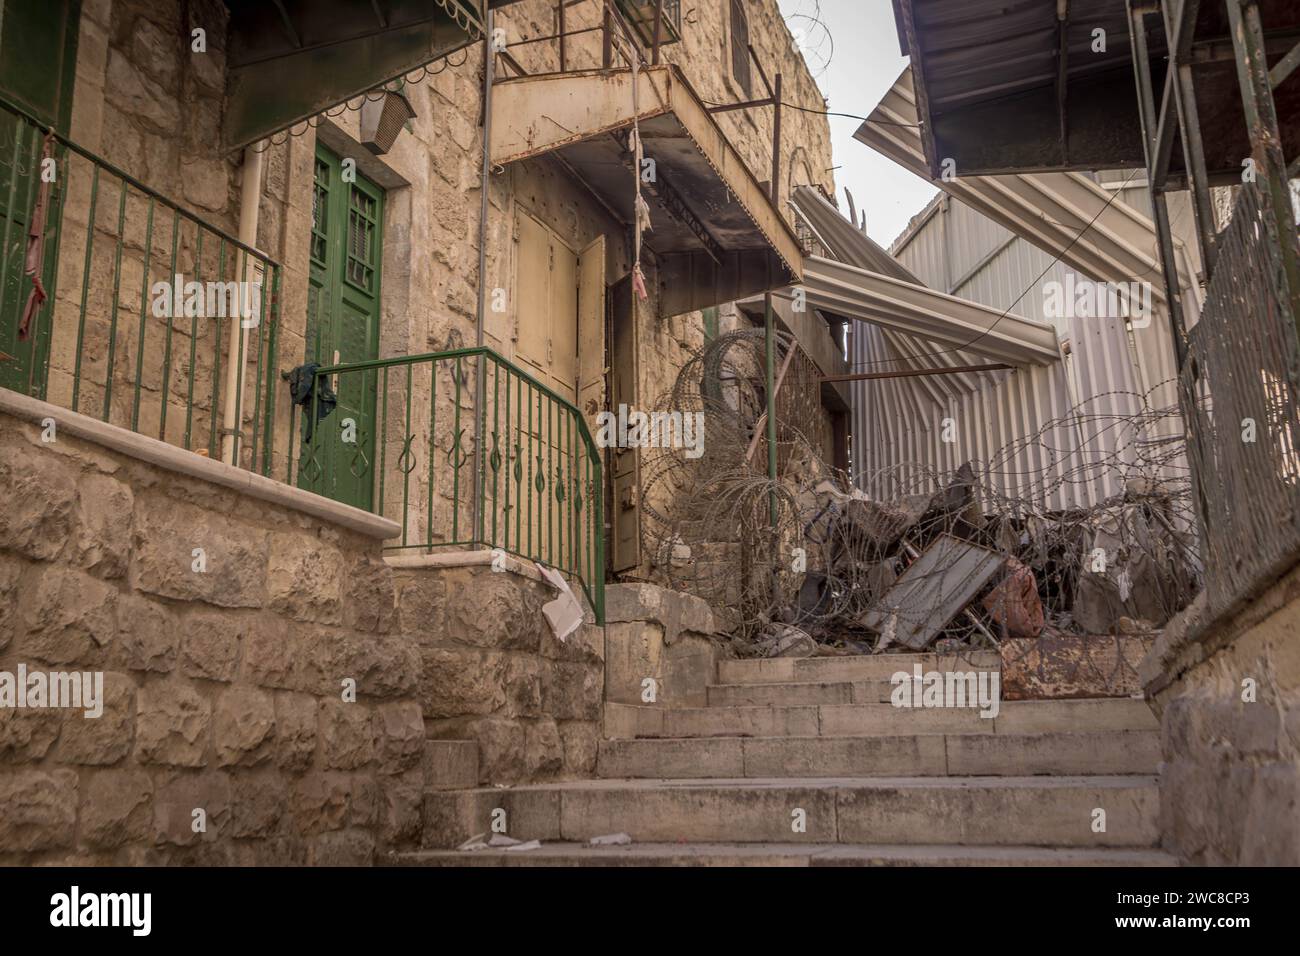 Il filo spinato e il passaggio bloccato al confine tra le aree controllate da Israele e dalla Palestina di Hebron in Cisgiordania palestinese. Foto Stock